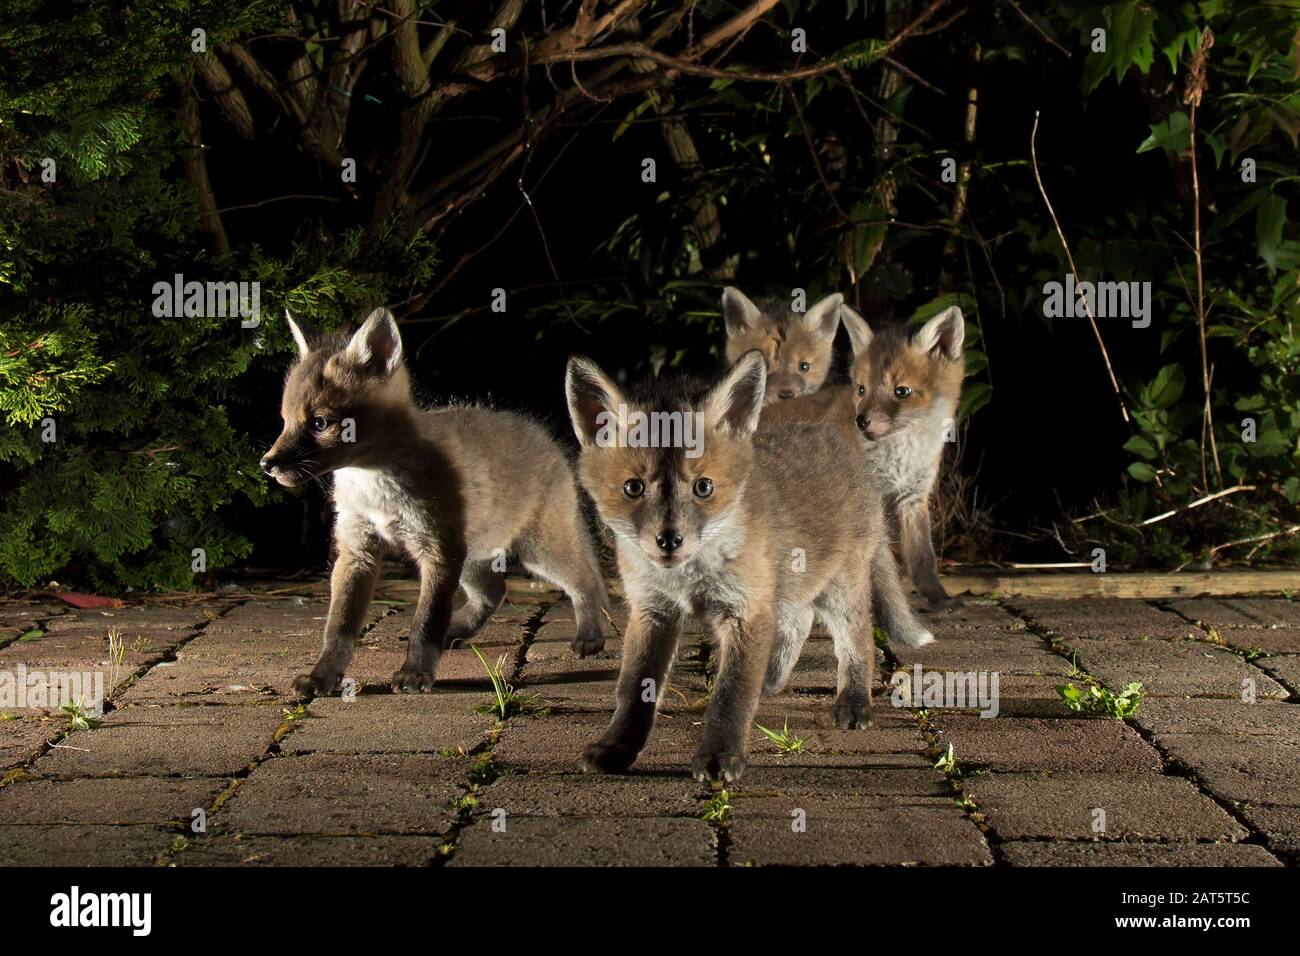 Gros plan sur les petits renards rouges sauvages du Royaume-Uni (Vulpes vulpes) isolés à l'extérieur la nuit dans le jardin pris en lumière. Renards mignons ; faune urbaine. Banque D'Images